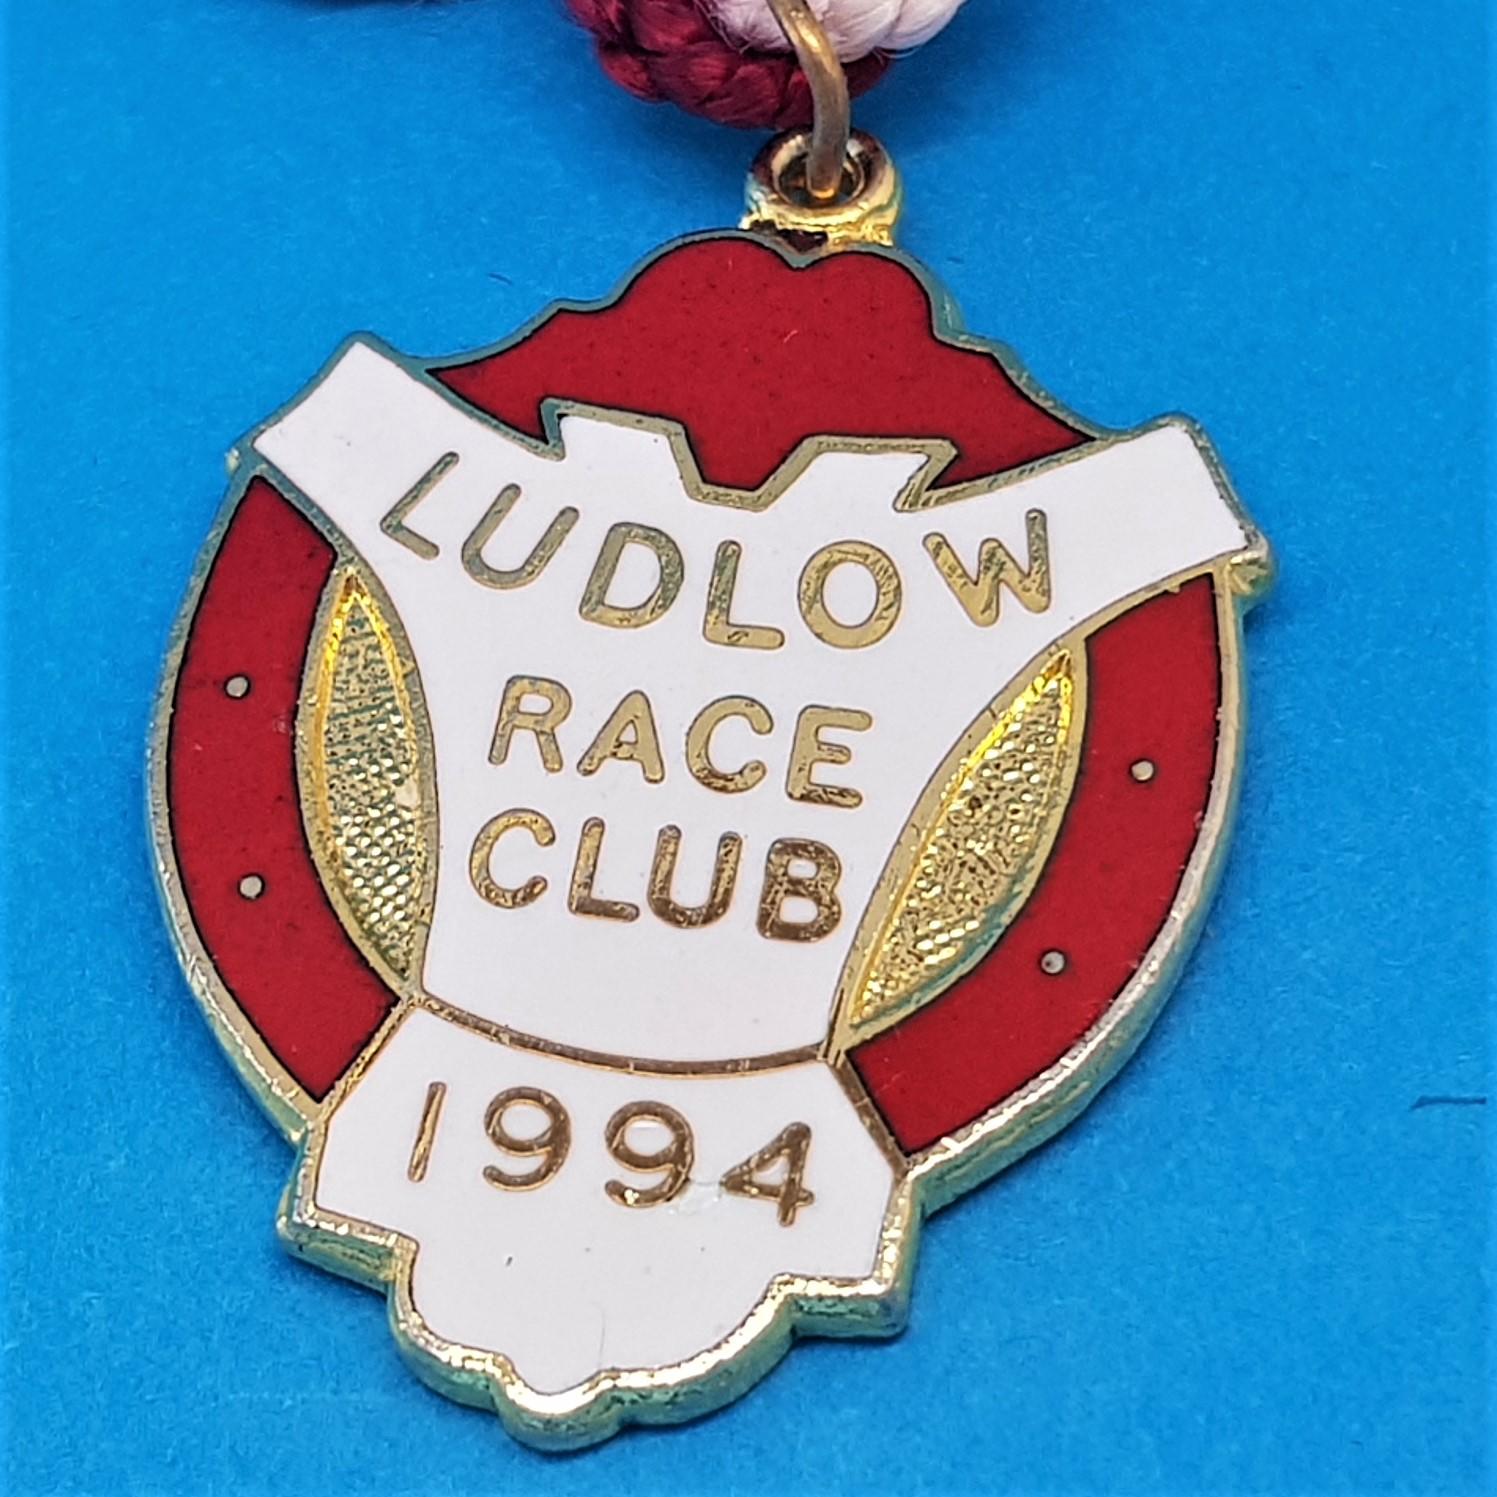 Ludlow 1994